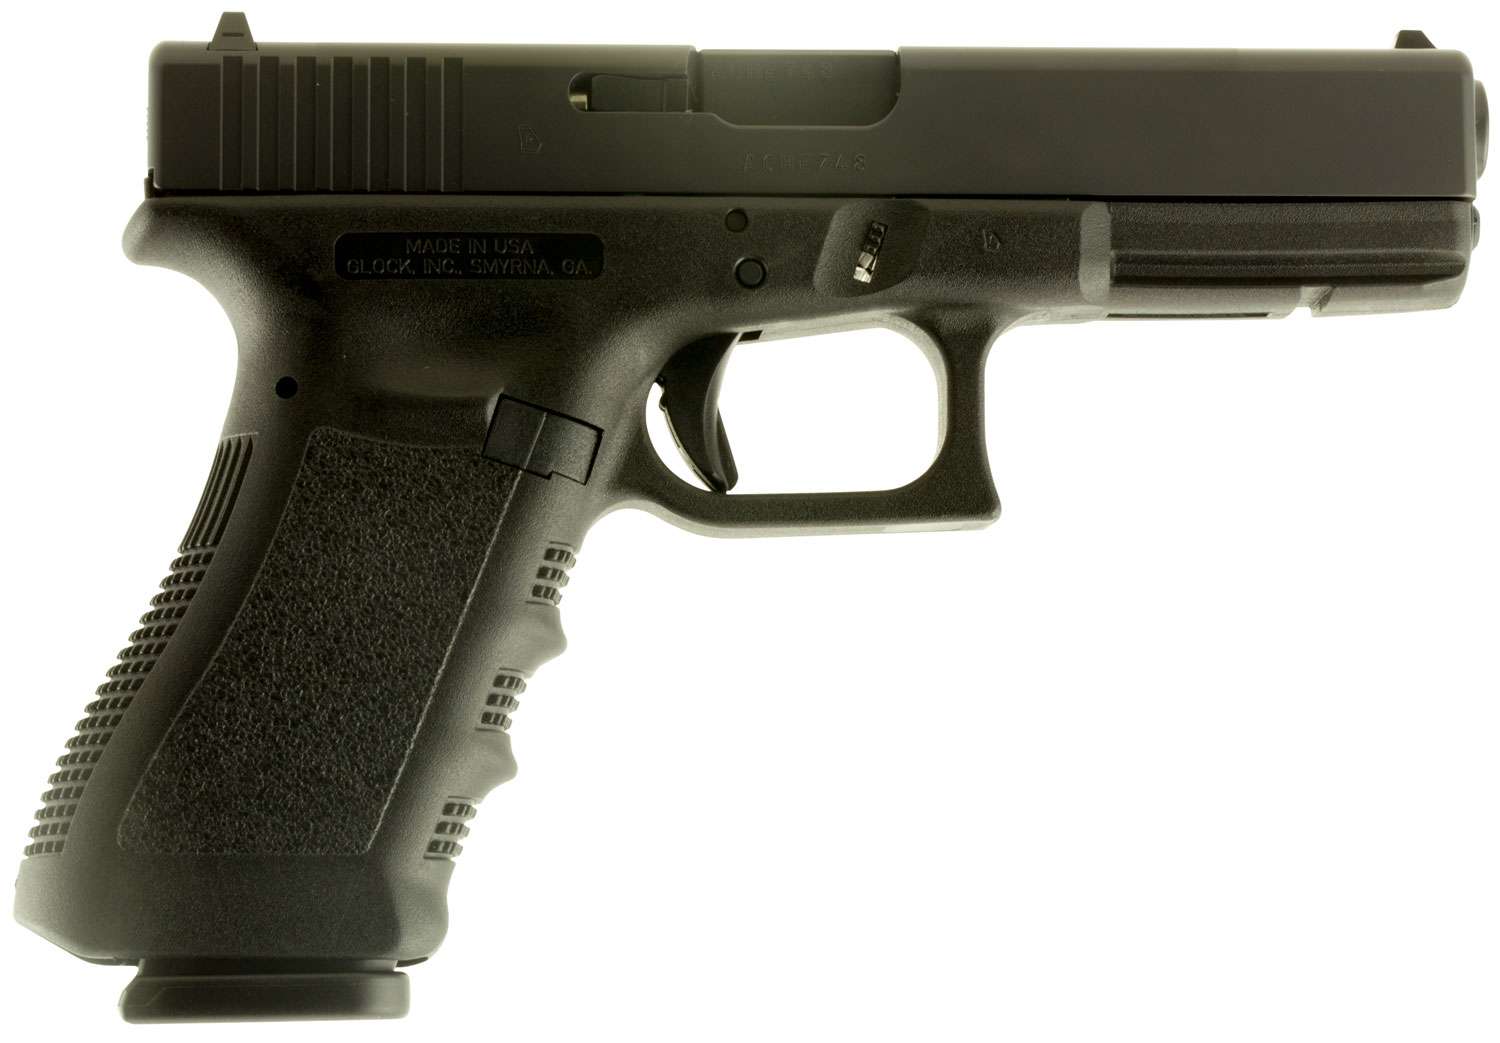 Glock UI1750203 G17 Gen3 Double 9mm Luger 4.48" 17+1 FS Black Polymer Grip/Frame Black